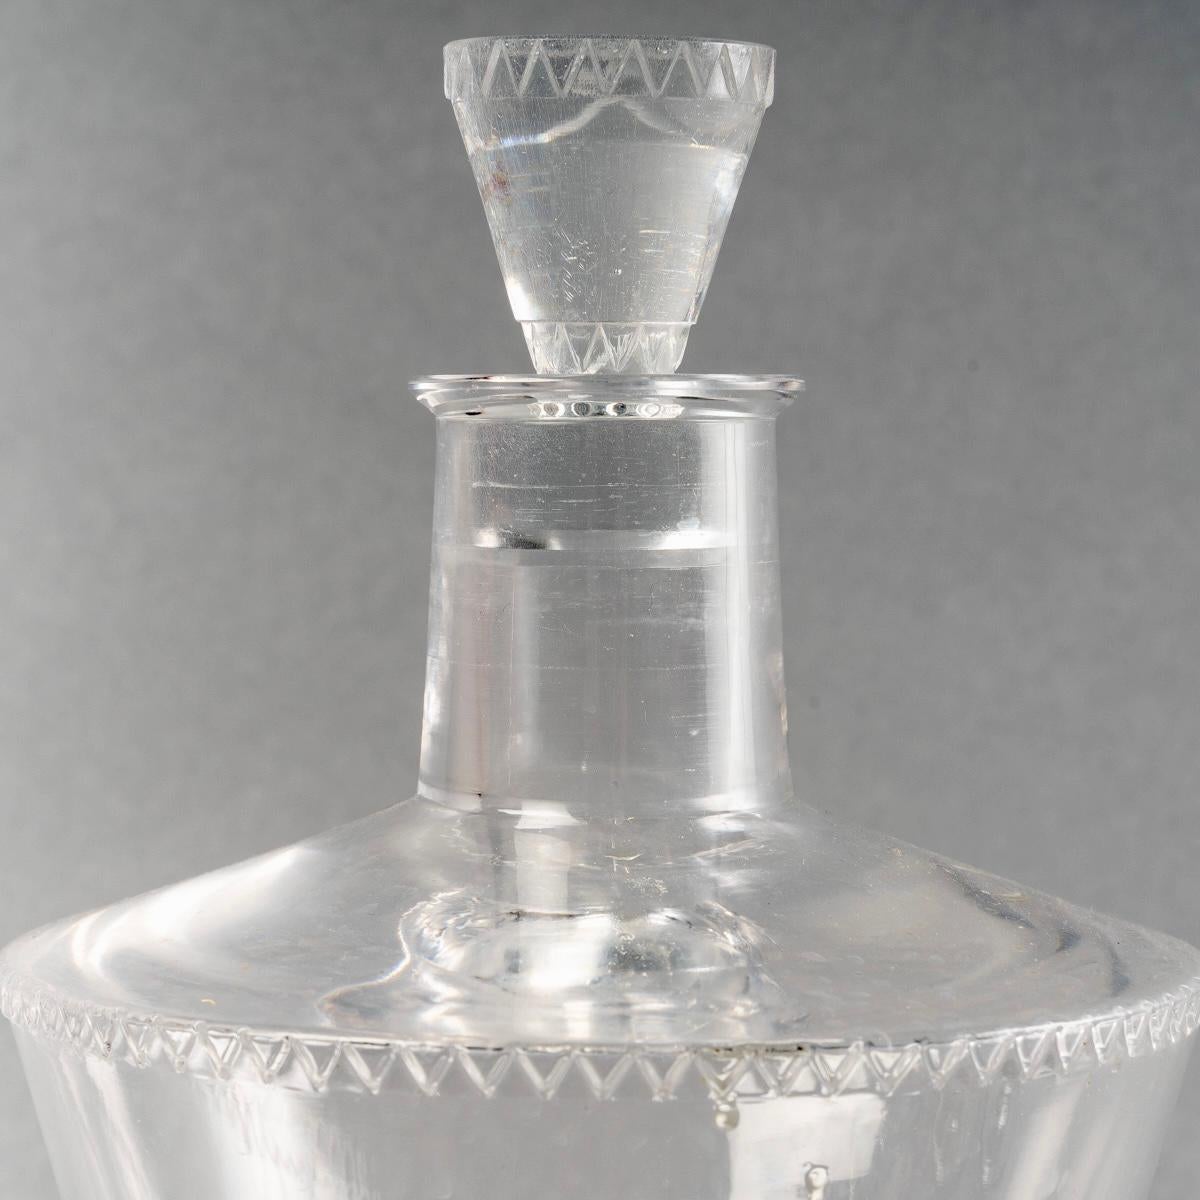 1932 René Lalique Set of Glasses Decanter Pitcher Vouvray Clear Glass 42 Pieces 1